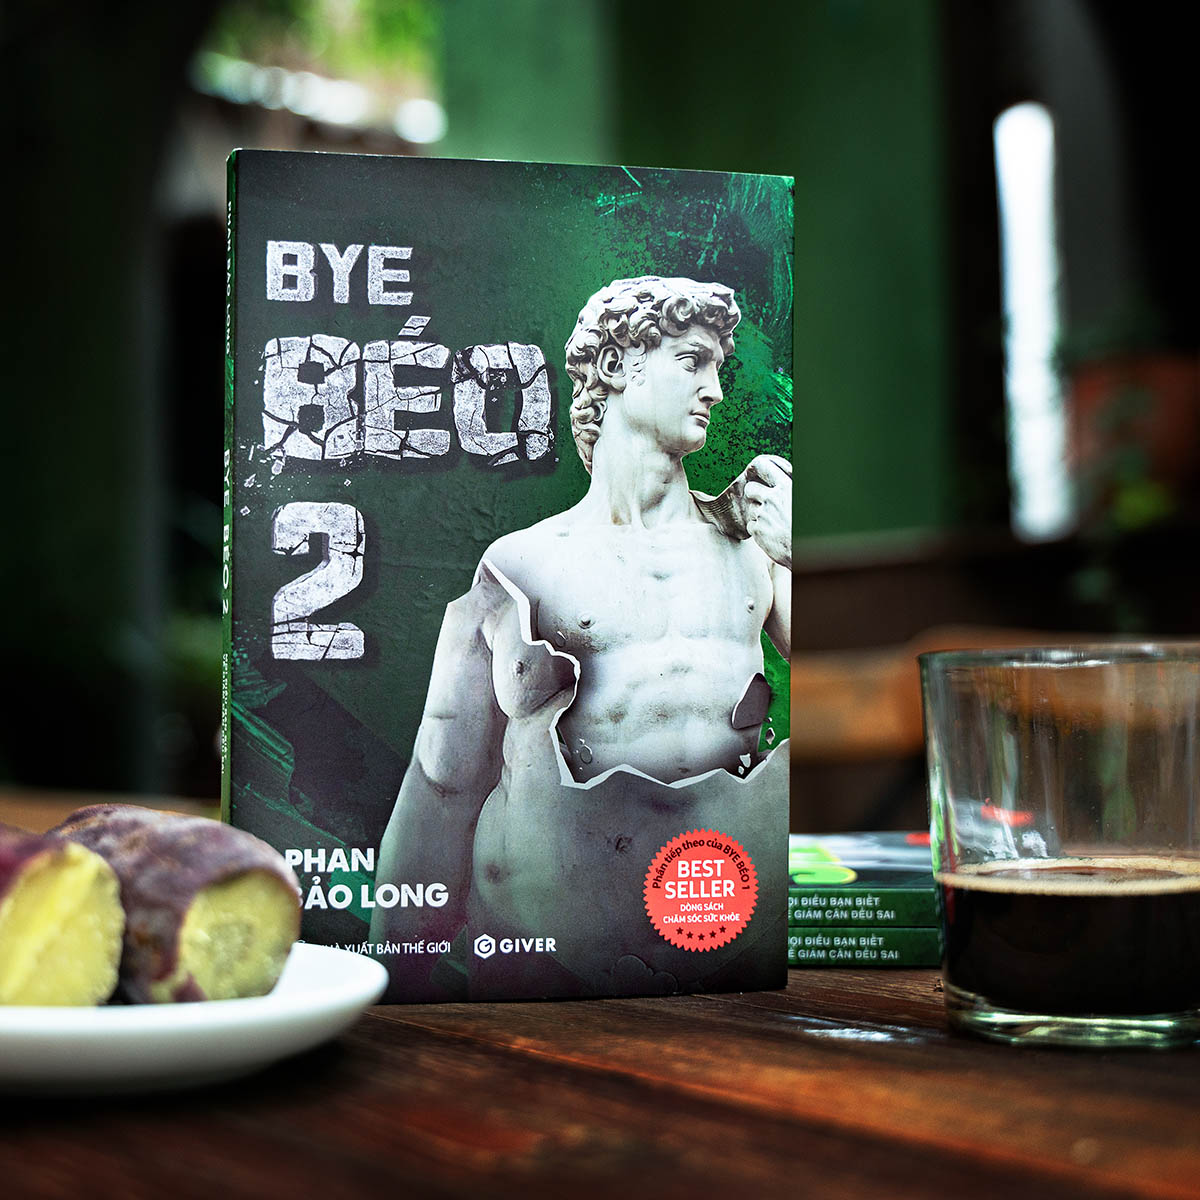 Sách Bye Béo 2 - Mọi điều bạn biết về Giảm Cân đều (Đúng) Sai - Phan Bảo Long